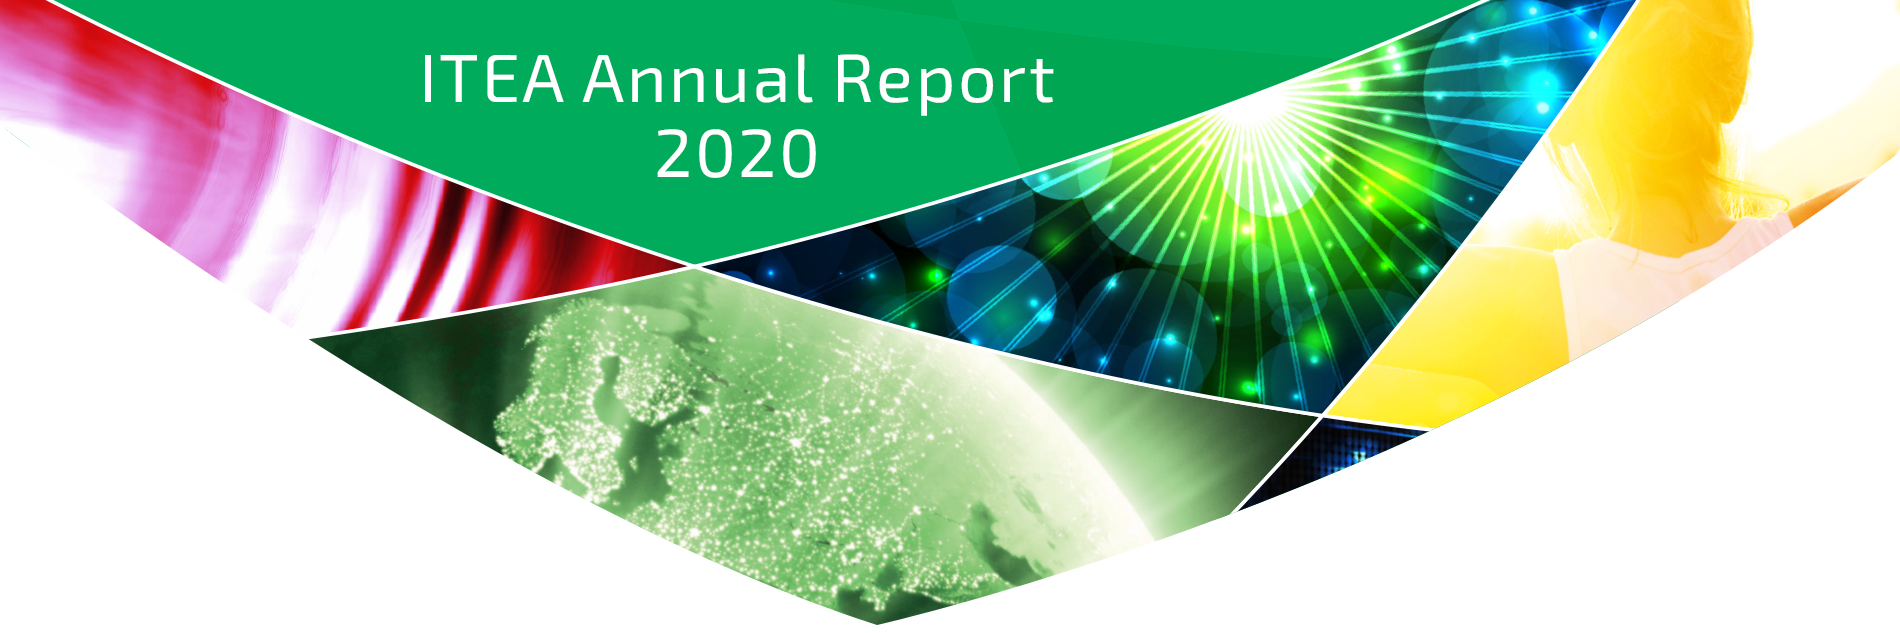 ITEA Annual Report 2020 Header